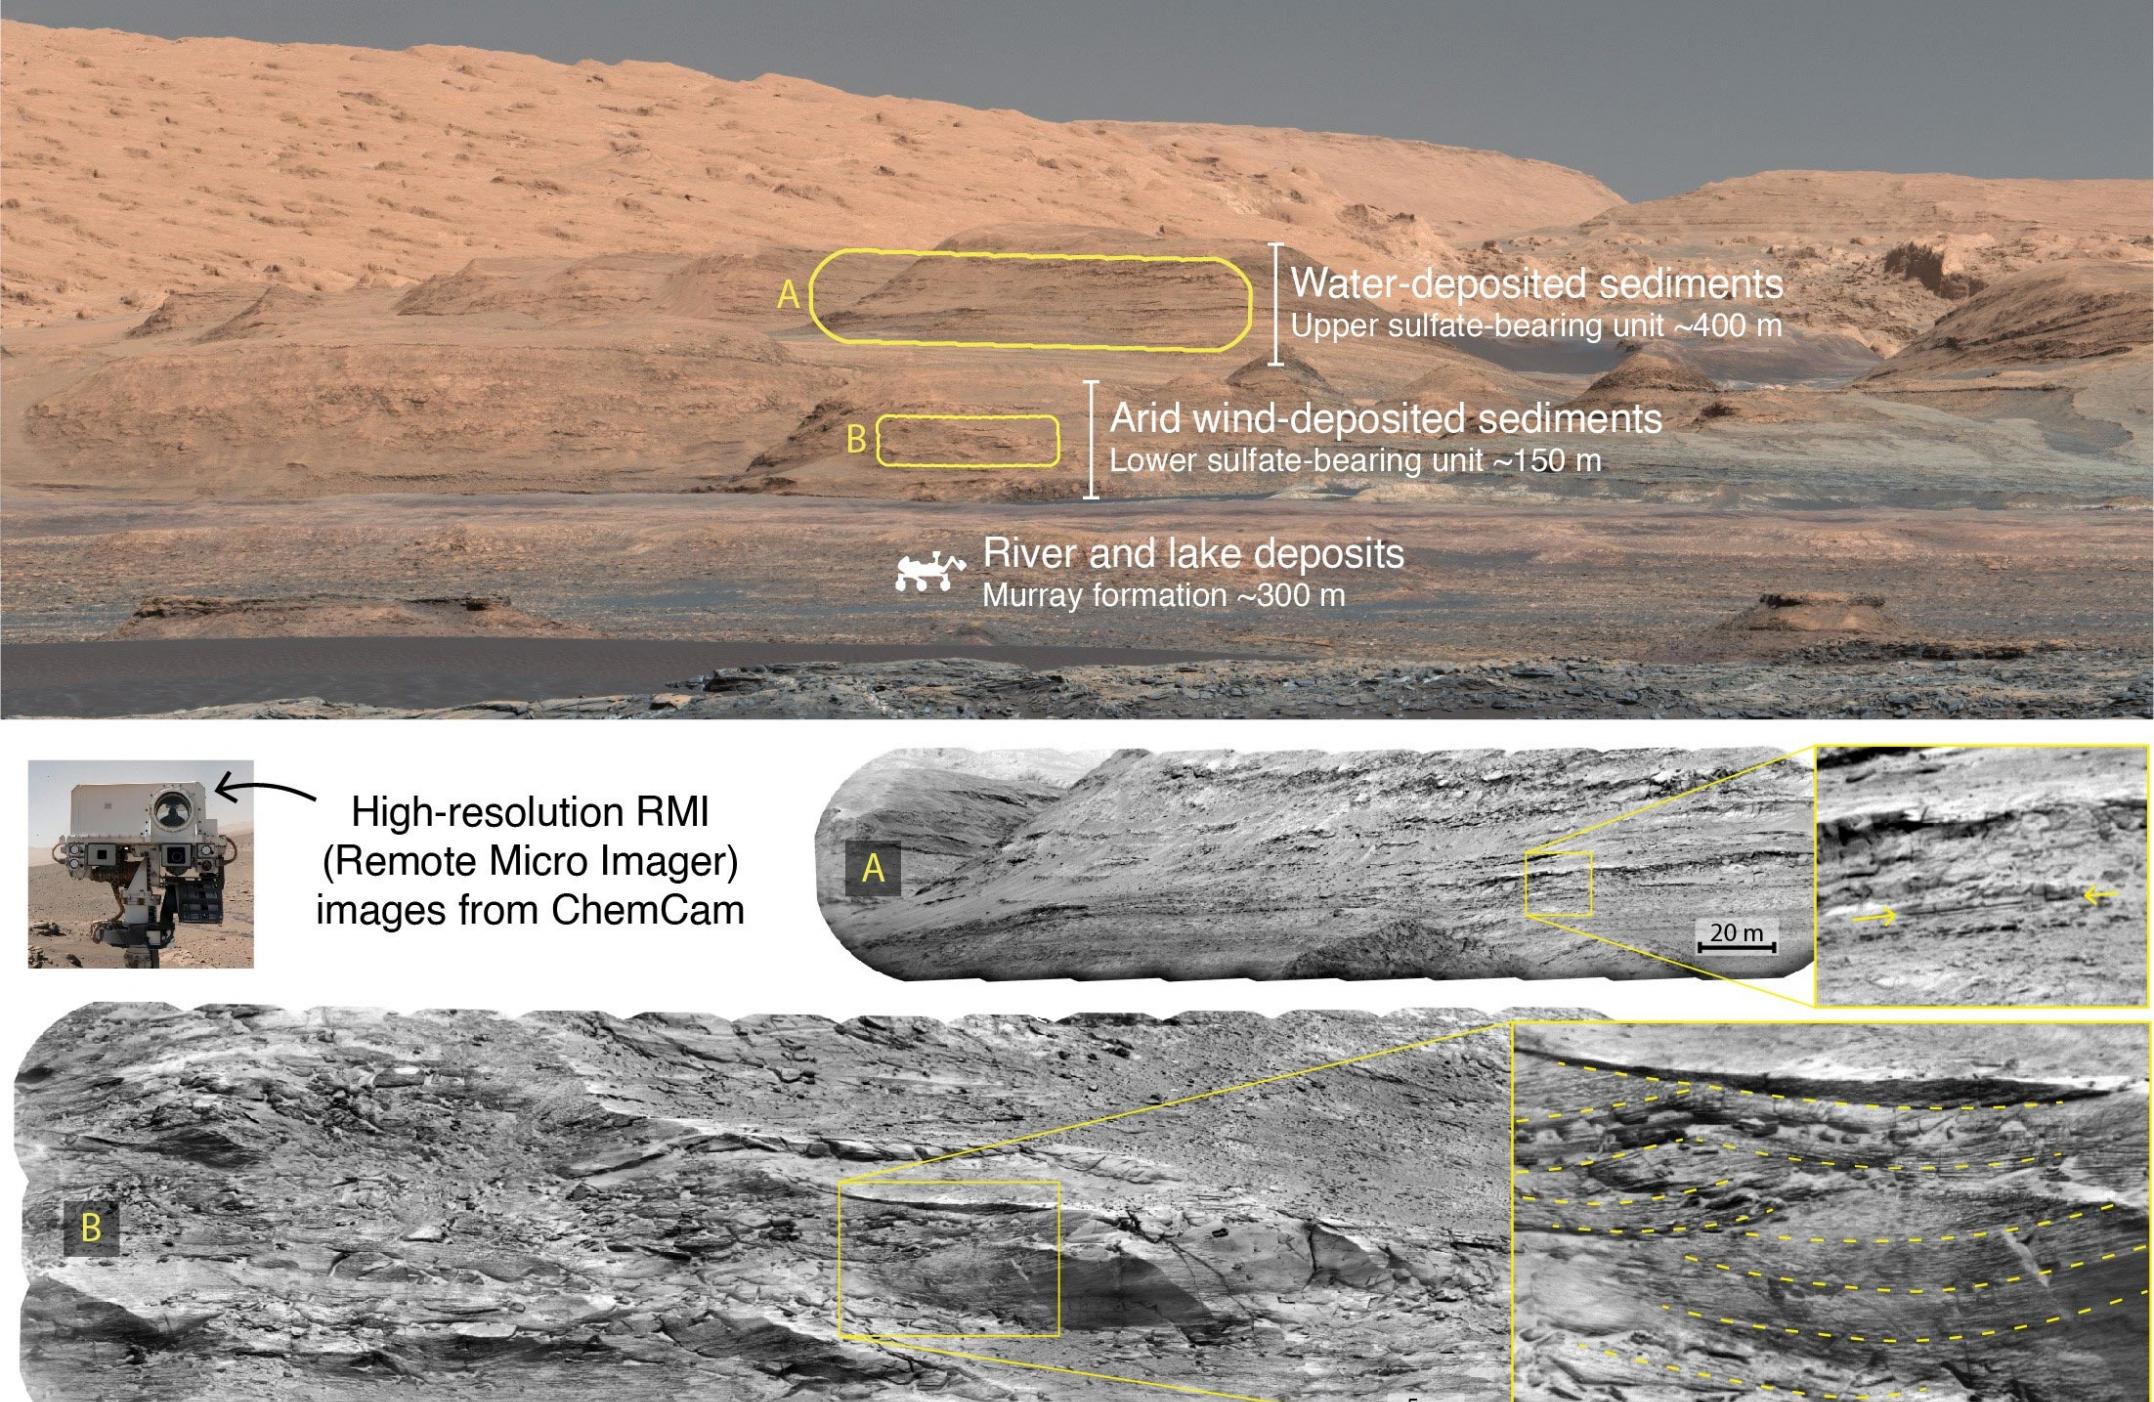 火星气候曾经在干燥和潮湿的时期之间交替出现 在大约30亿年前完全干涸